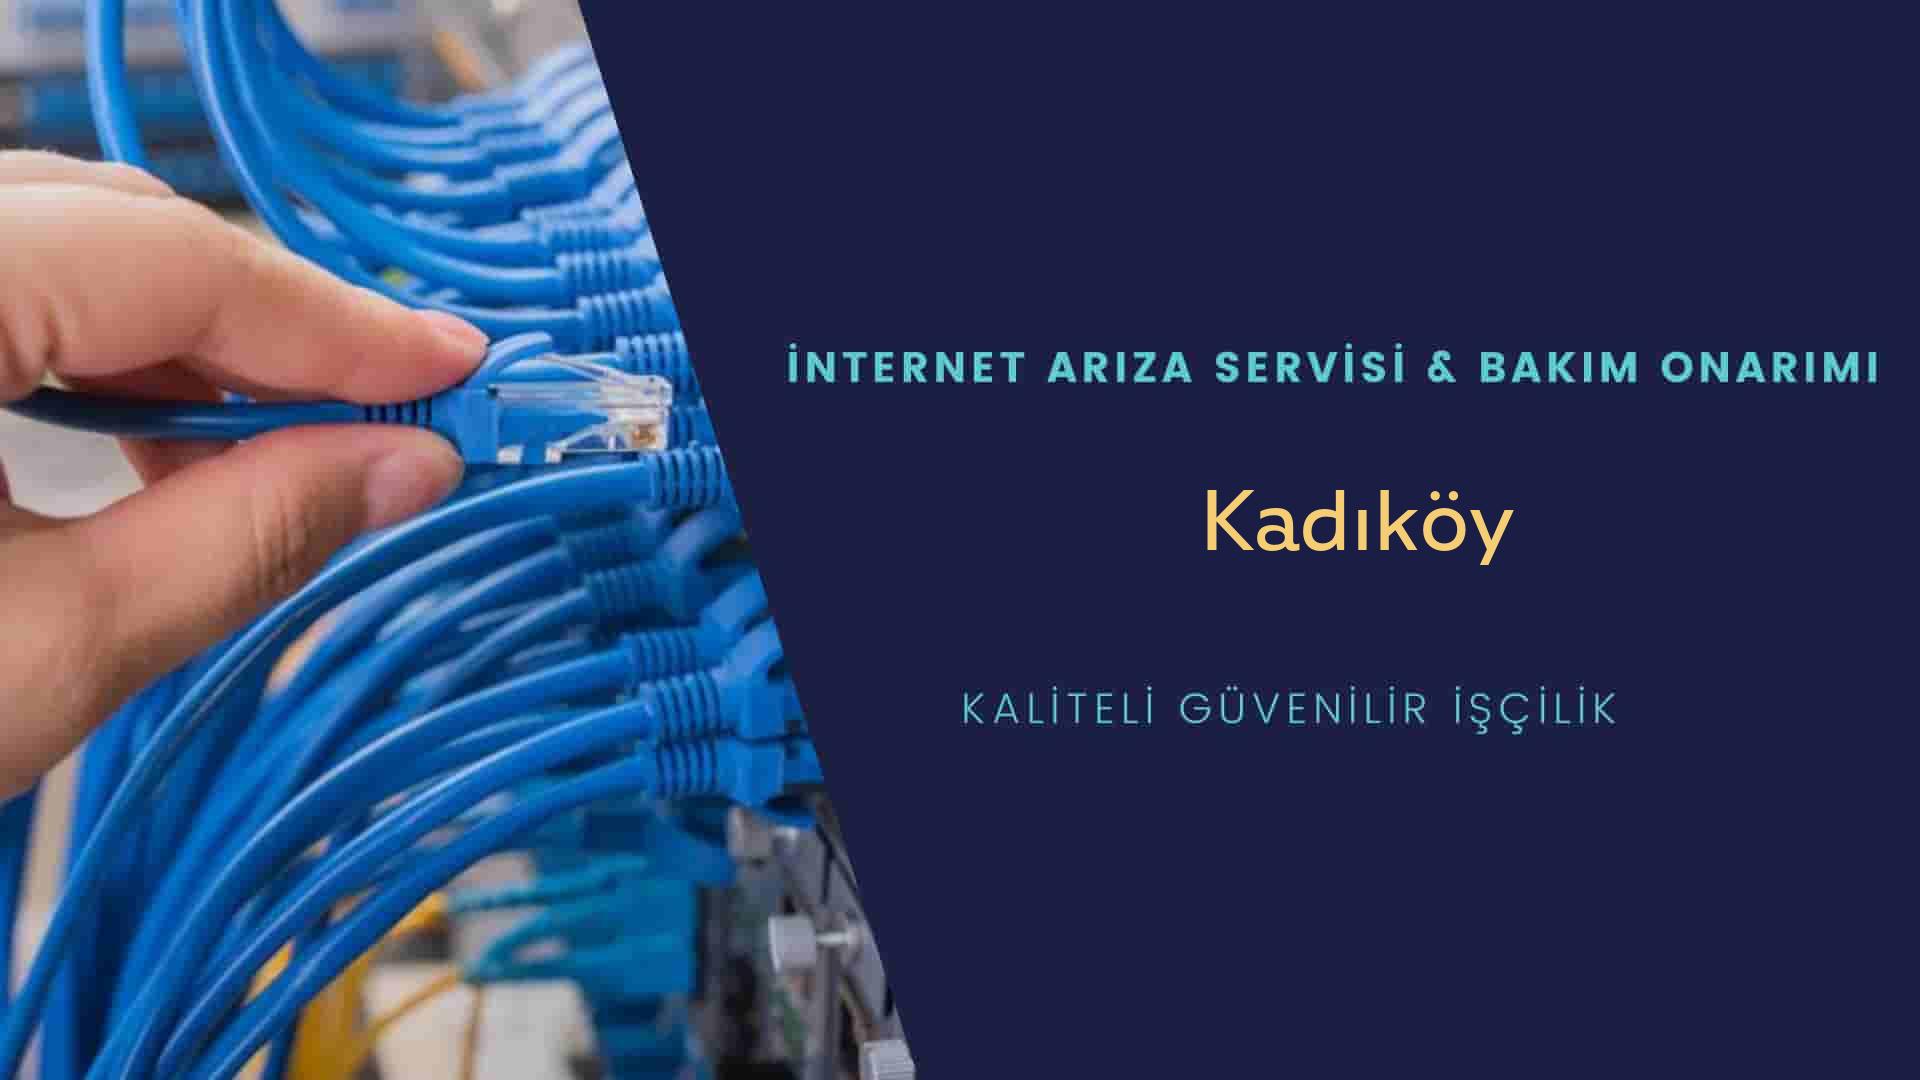 Kadiköy Mahallesi internet kablosu çekimi yapan yerler veya elektrikçiler mi? arıyorsunuz doğru yerdesiniz o zaman sizlere 7/24 yardımcı olacak profesyonel ustalarımız bir telefon kadar yakındır size.